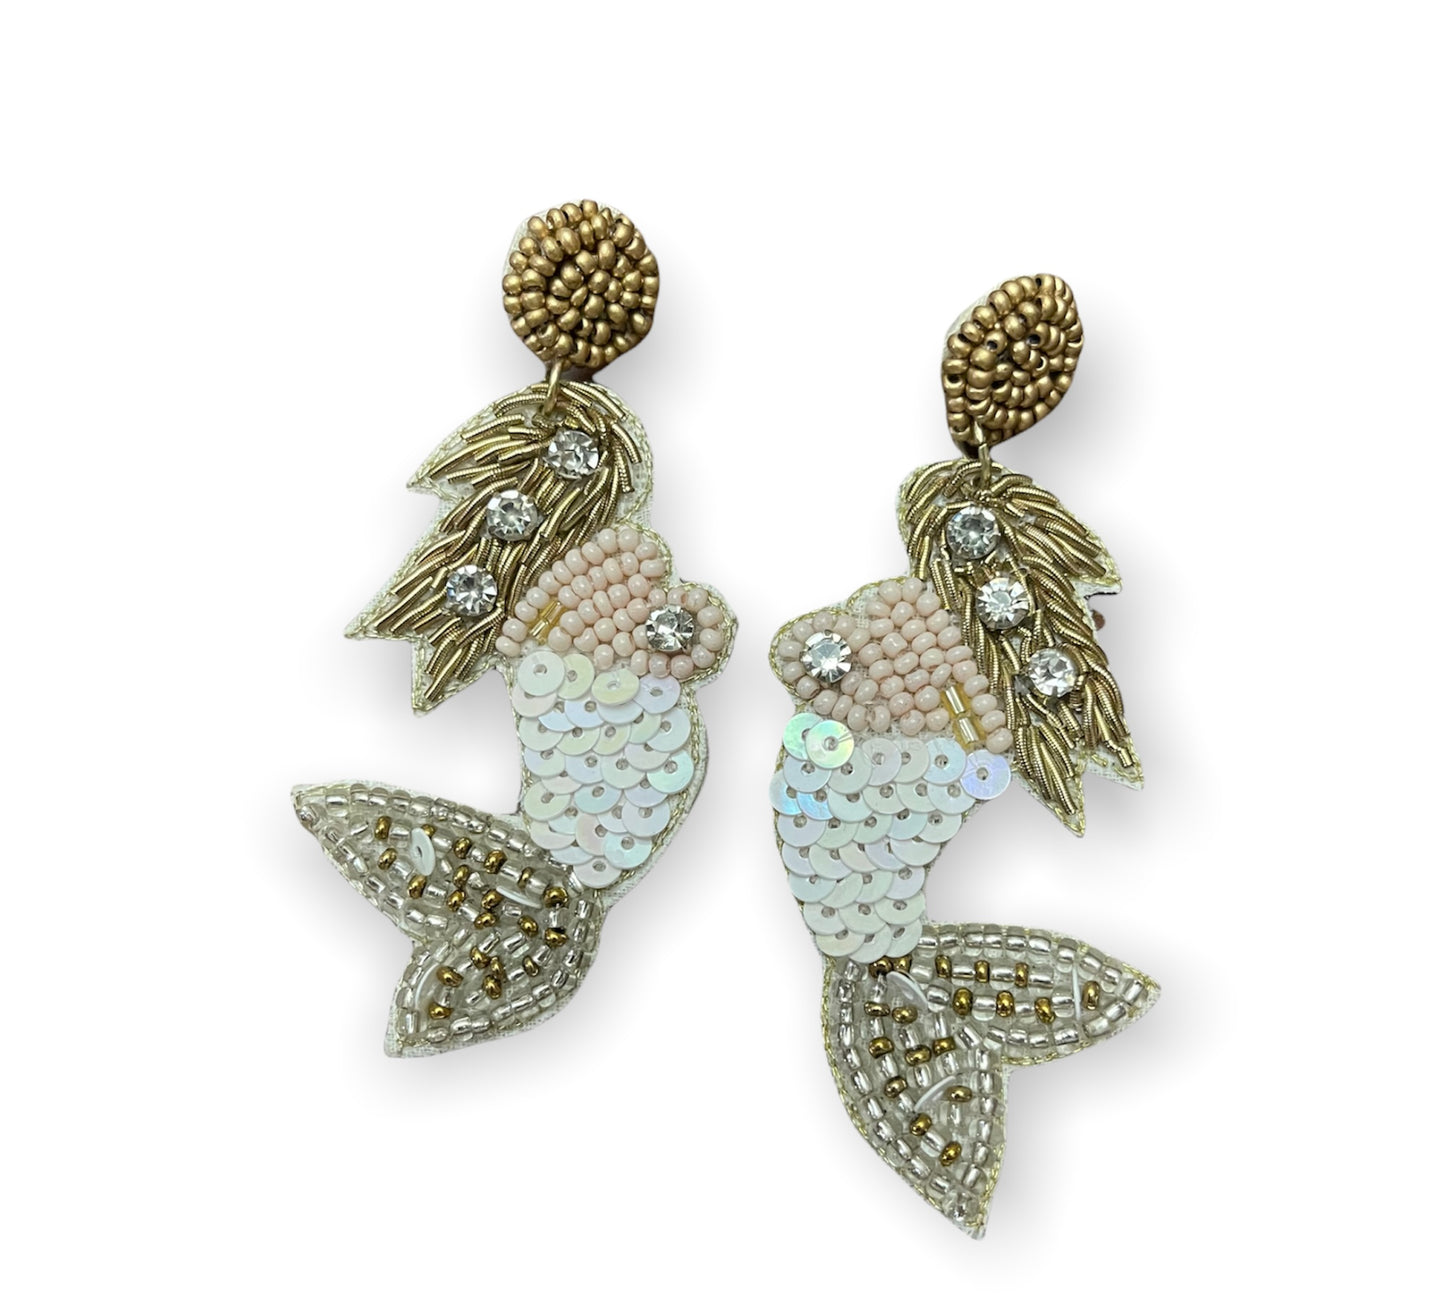 Mermaid Side Earrings - 2 colors